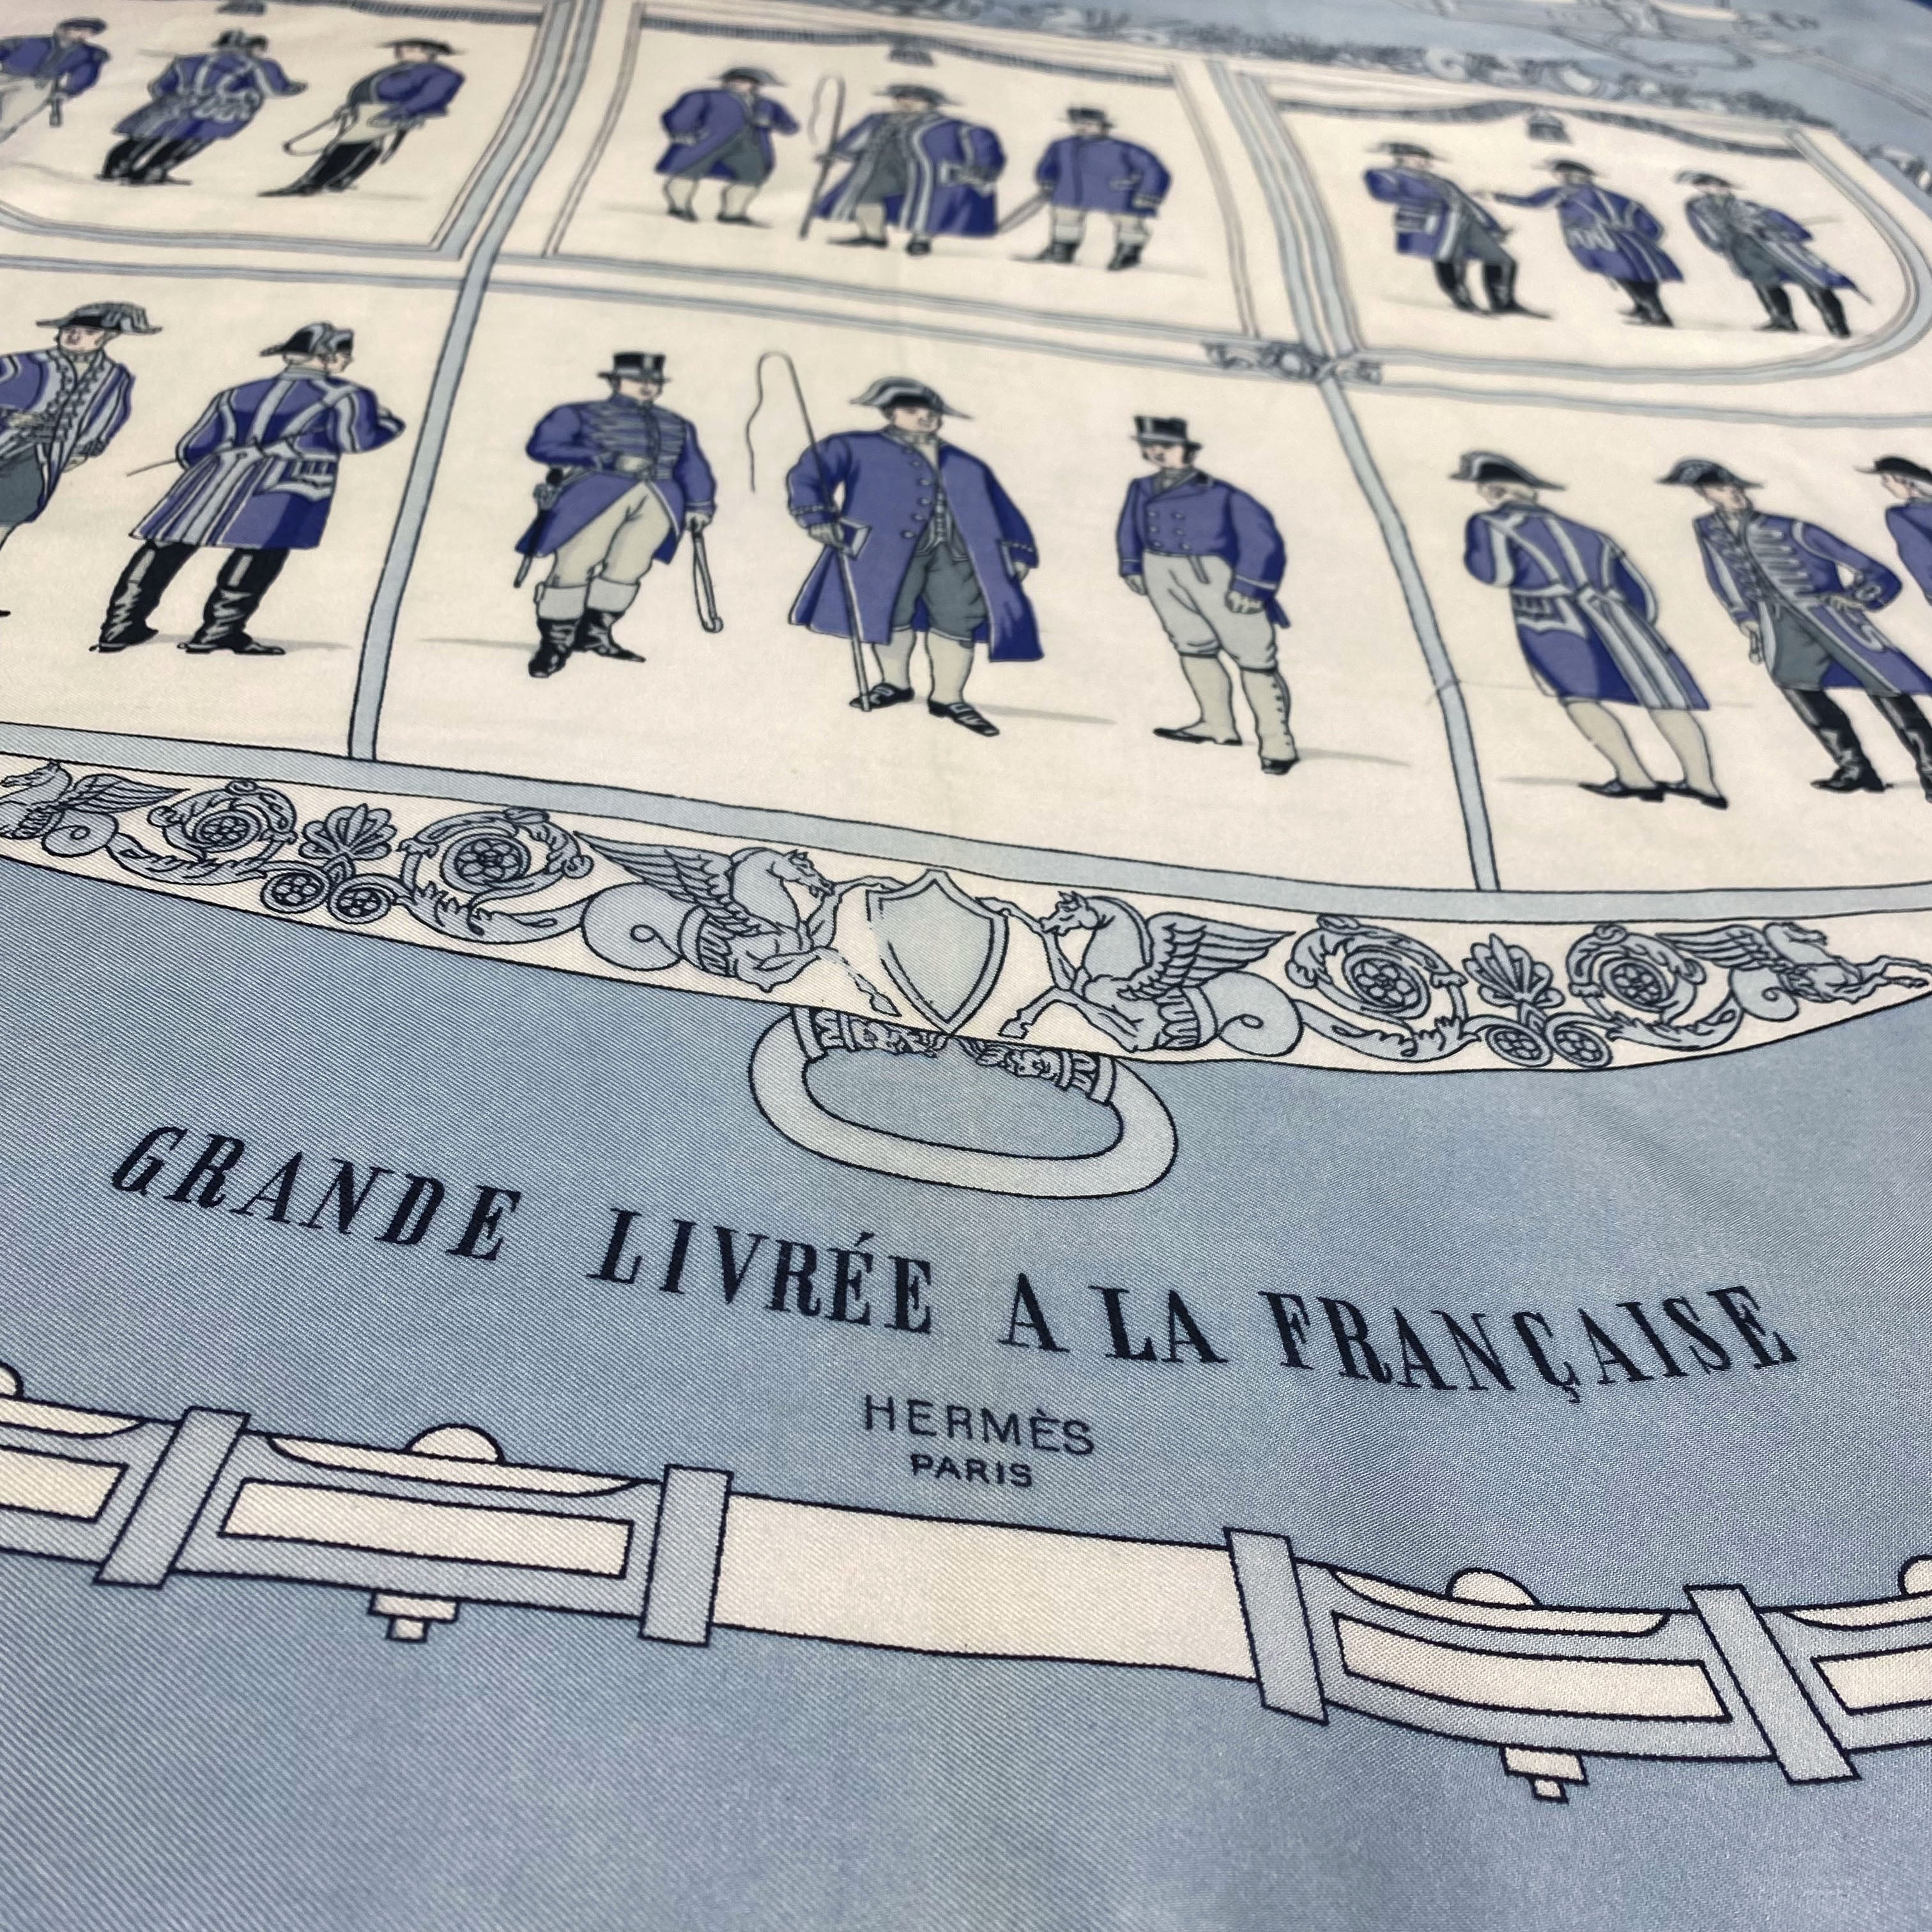 Carré Hermès - Cochers des écuries impériales - grande livrée à la française